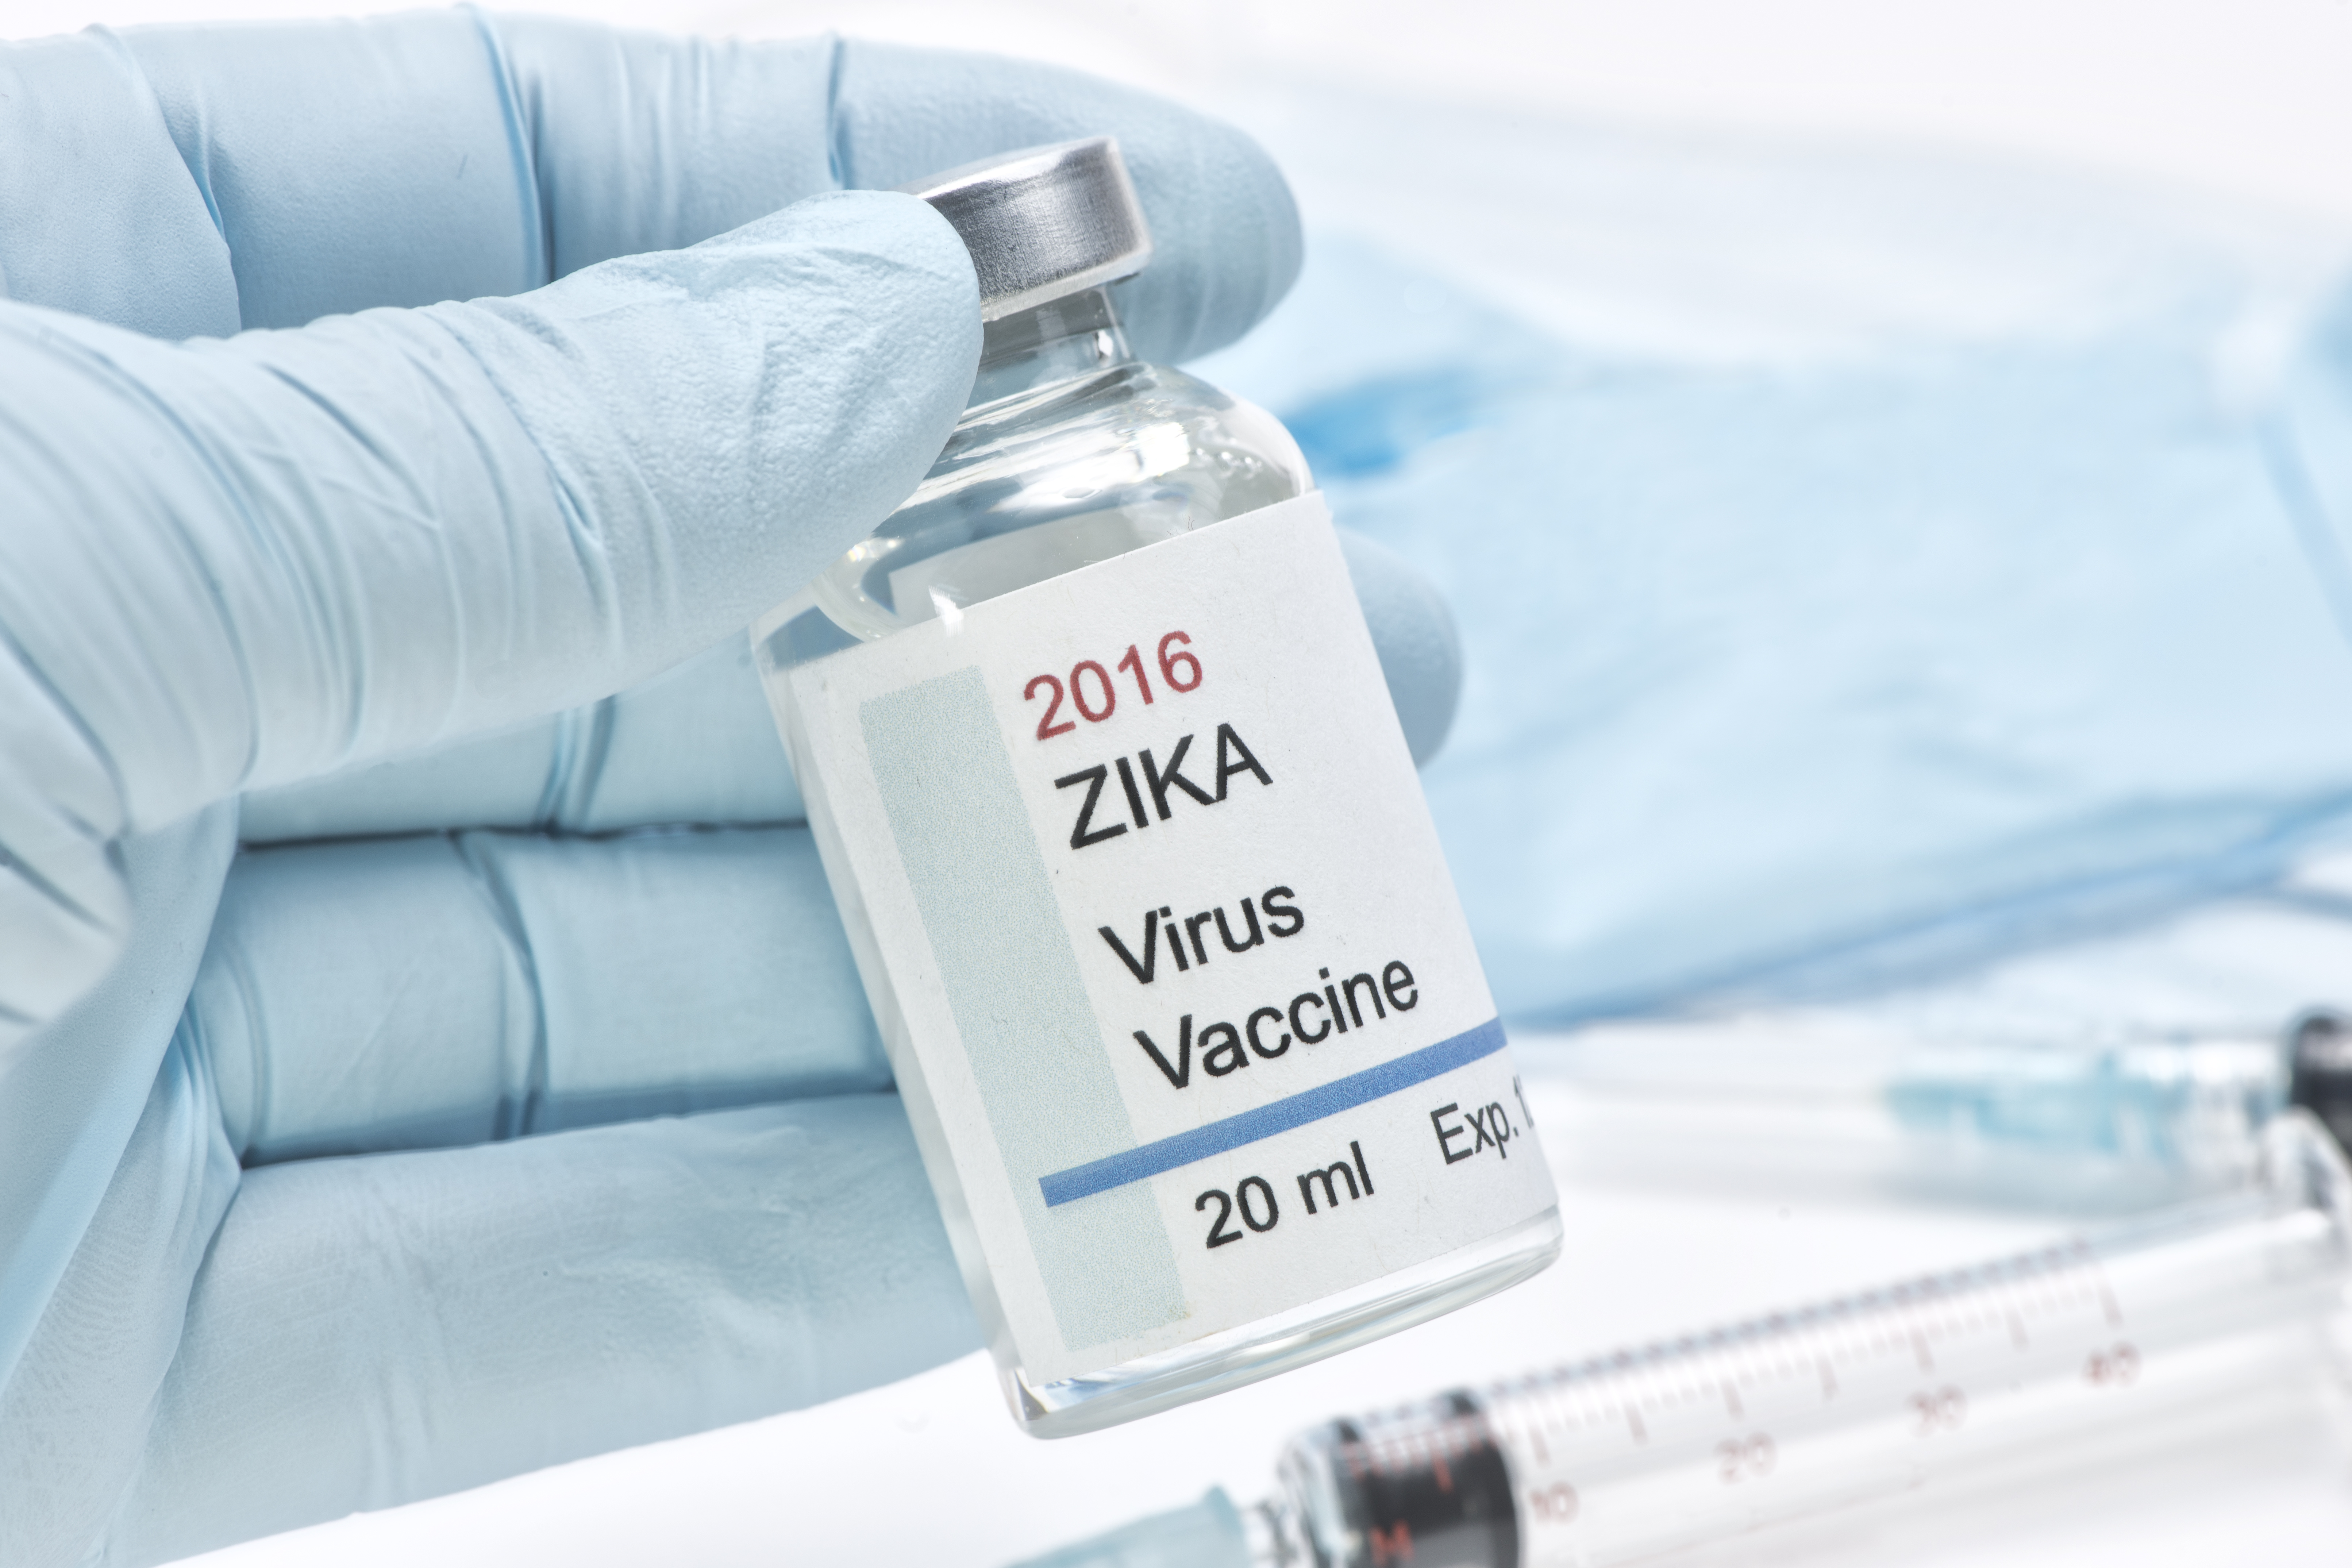 Zika Virus Vaccine